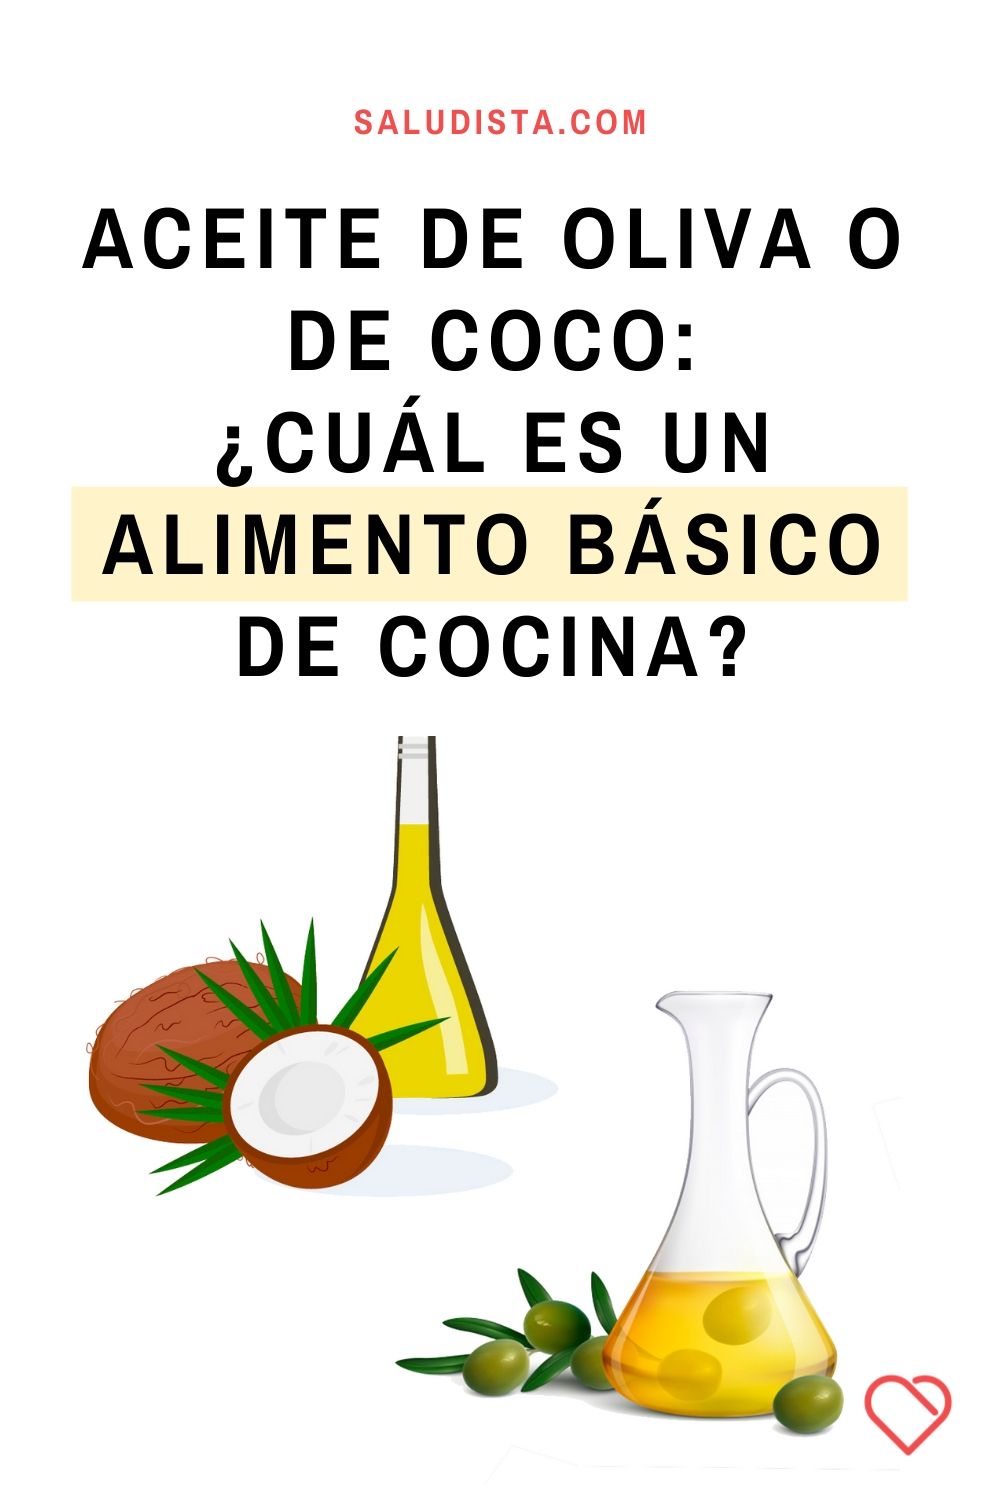 Aceite de oliva o de coco: ¿Cuál es un alimento básico de cocina?